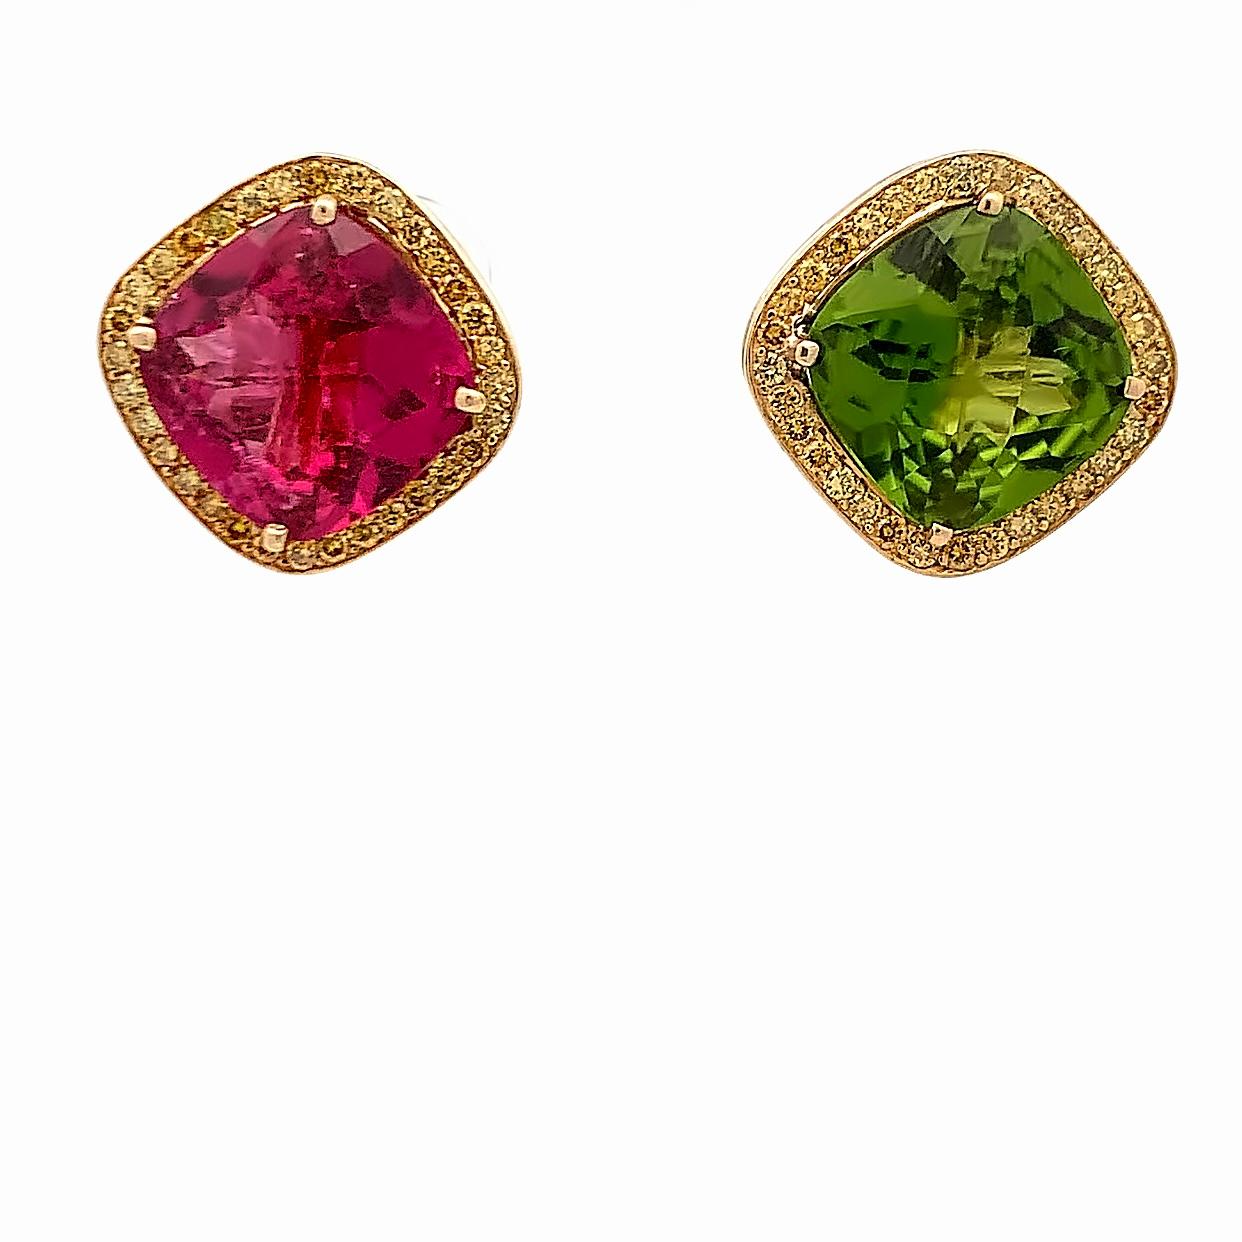 Paolo Costagli Ohrringe aus Turmalin, Peridot und gelben Diamanten.

Ein Paar Ohrringe von Paolo Costagli mit einem rosafarbenen Turmalin und einem Peridot im Facettenschliff, ergänzt durch einen Halo aus gelben Diamanten im Brillantschliff.

Maße: